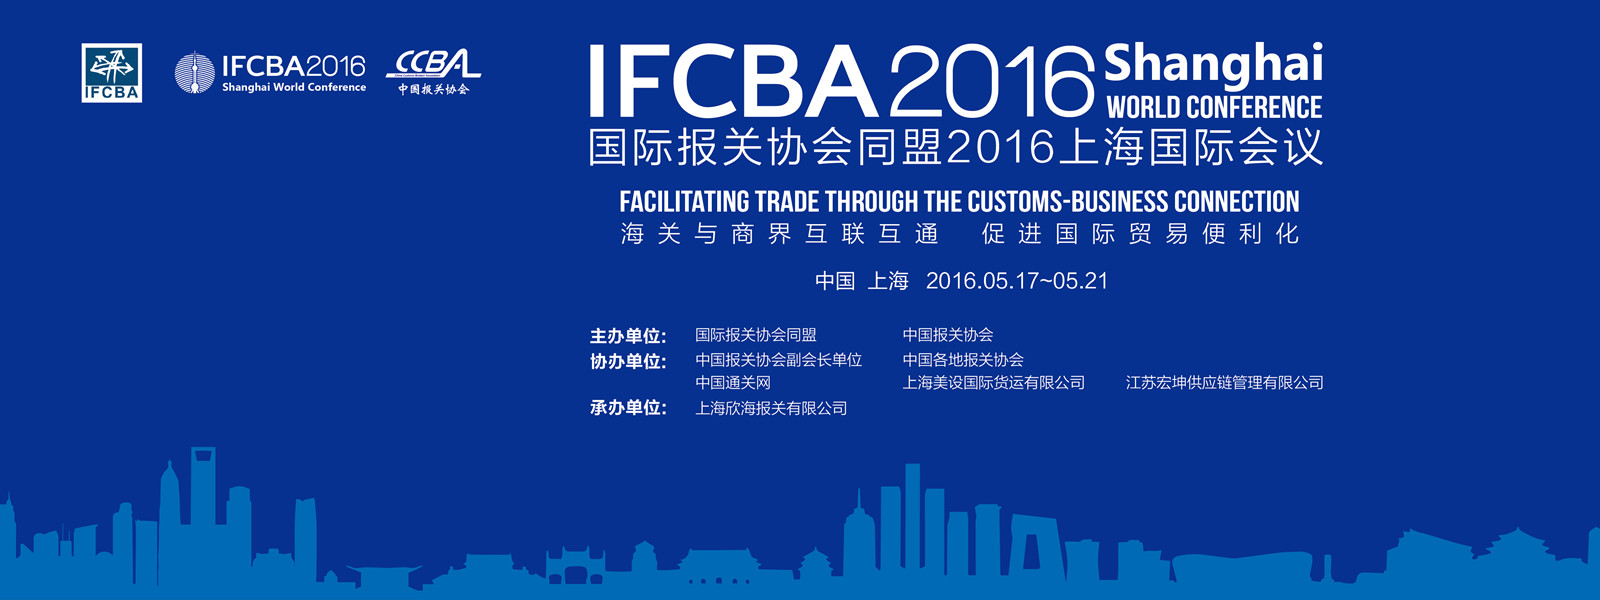 2016IFCBA花絮14—IFCBA2016国际会议召开欢迎酒会